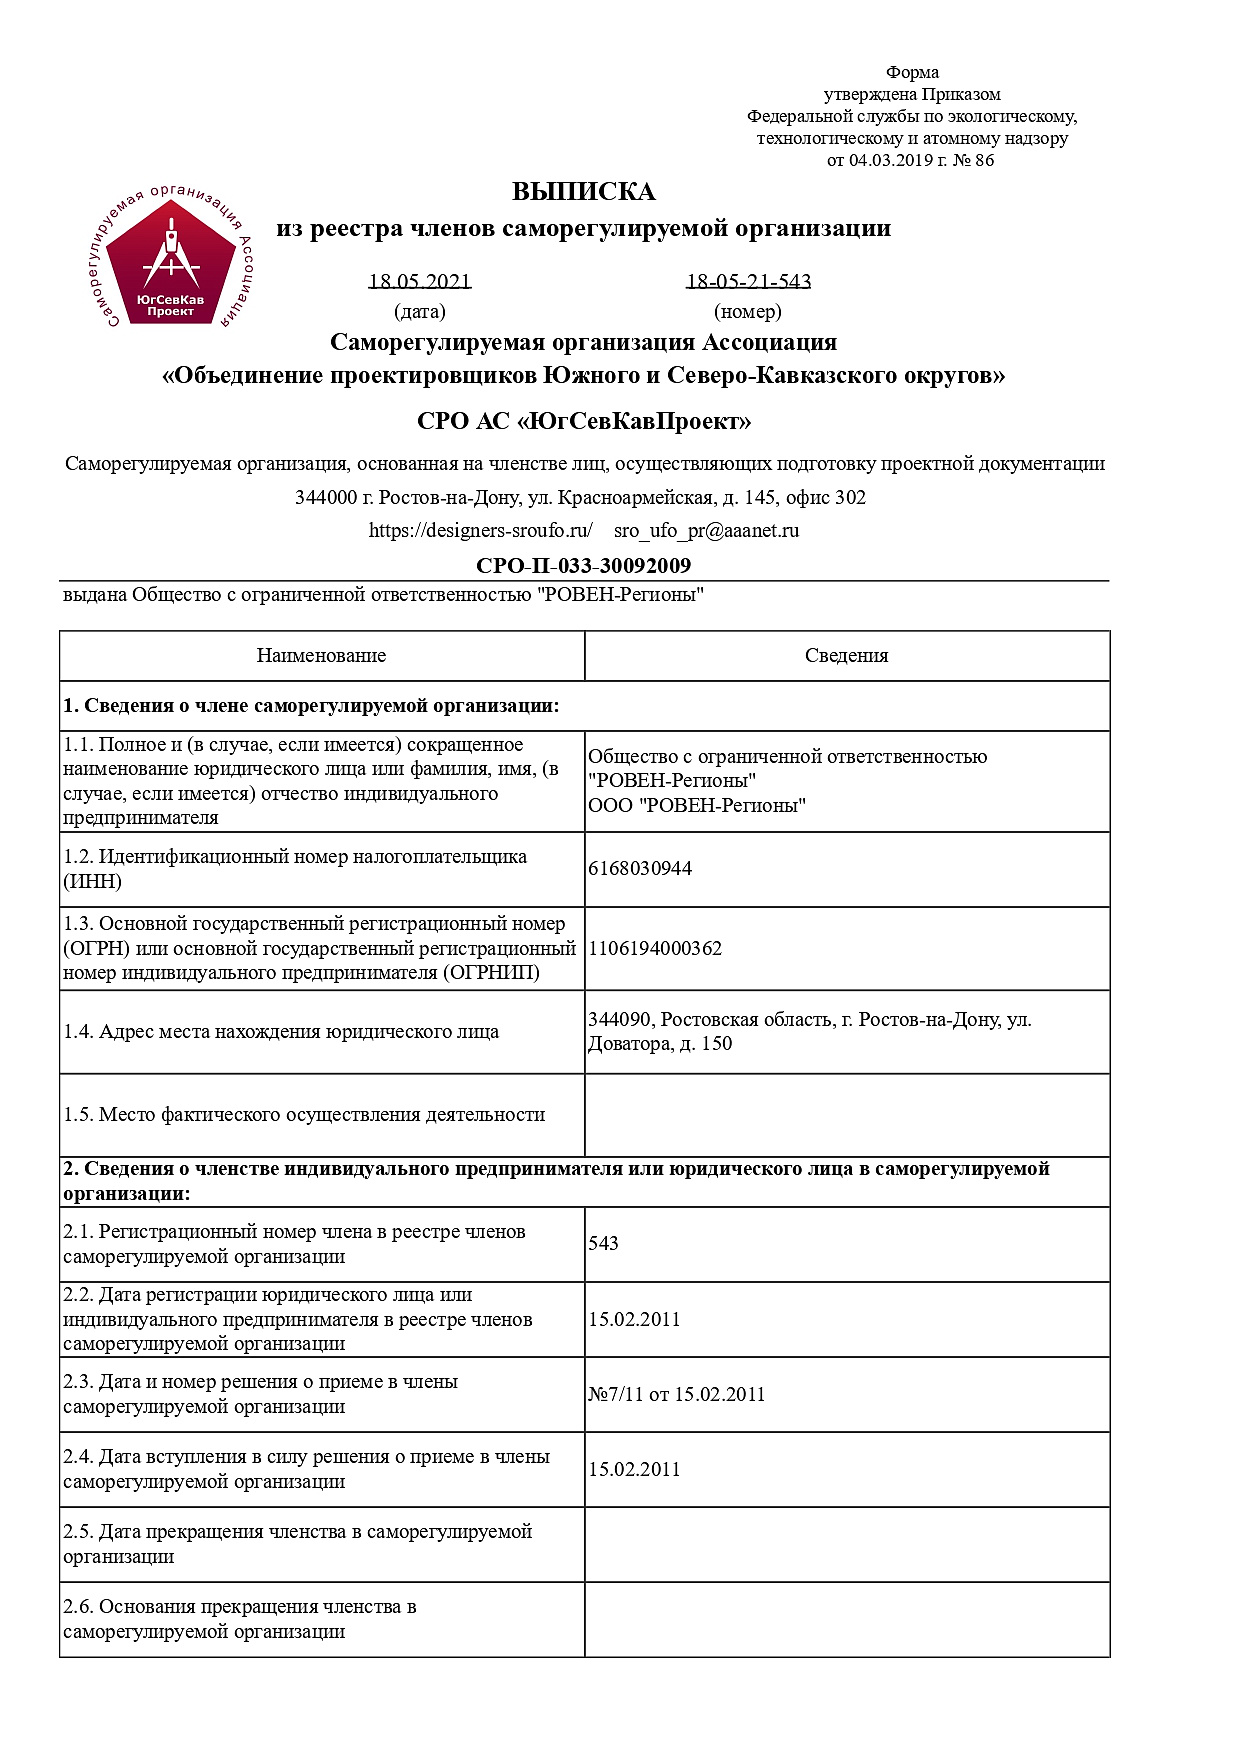 РОВЕН<br>Подготовка проектной документации<br>СРО-П-033-30092009 (1)<br>